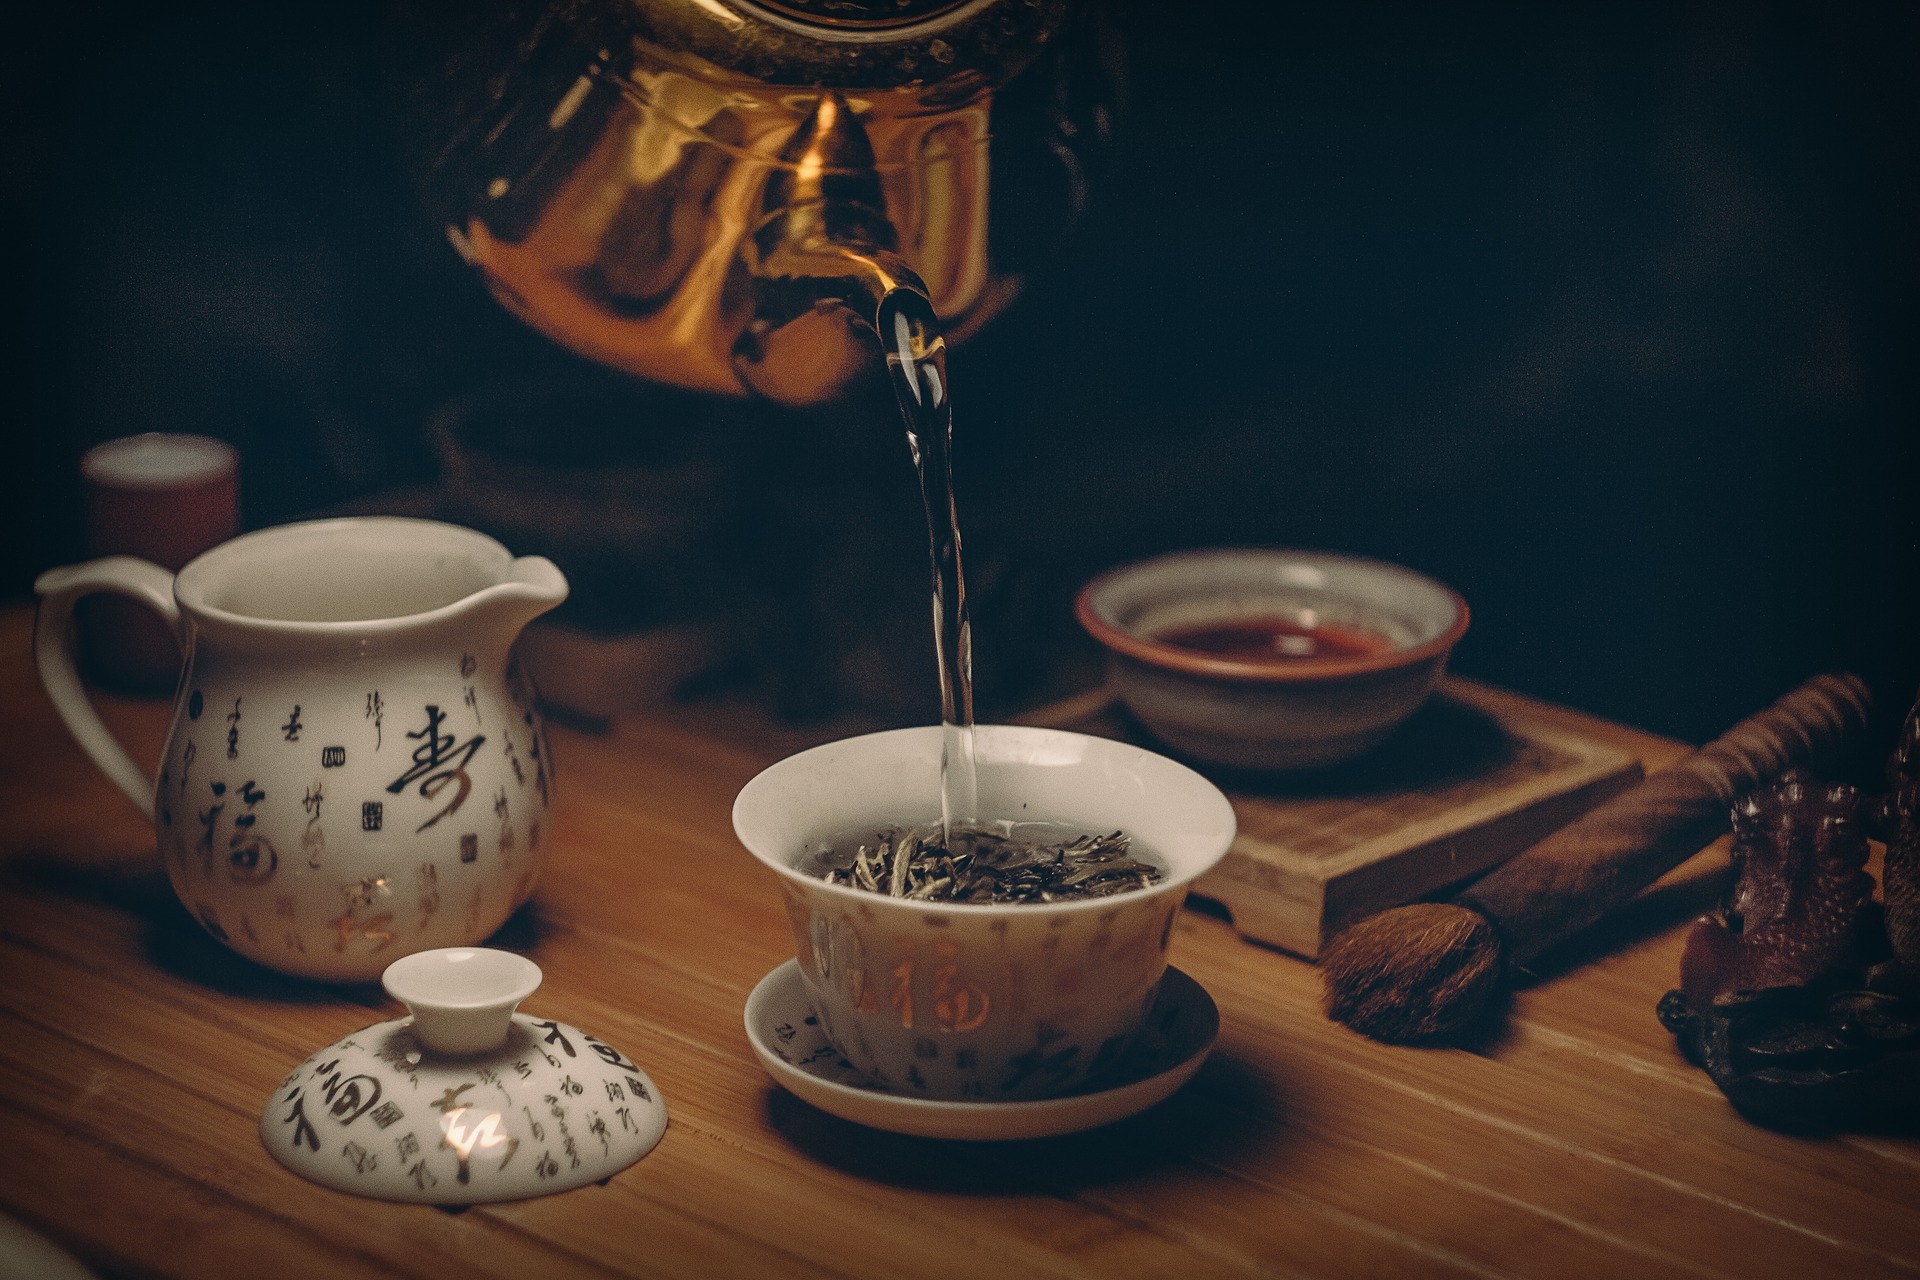 Originariamente, el té se preparaba vertiendo la hoja arrancada directamente en agua hirviendo, técnica también utilizada por otras bebidas similares al té